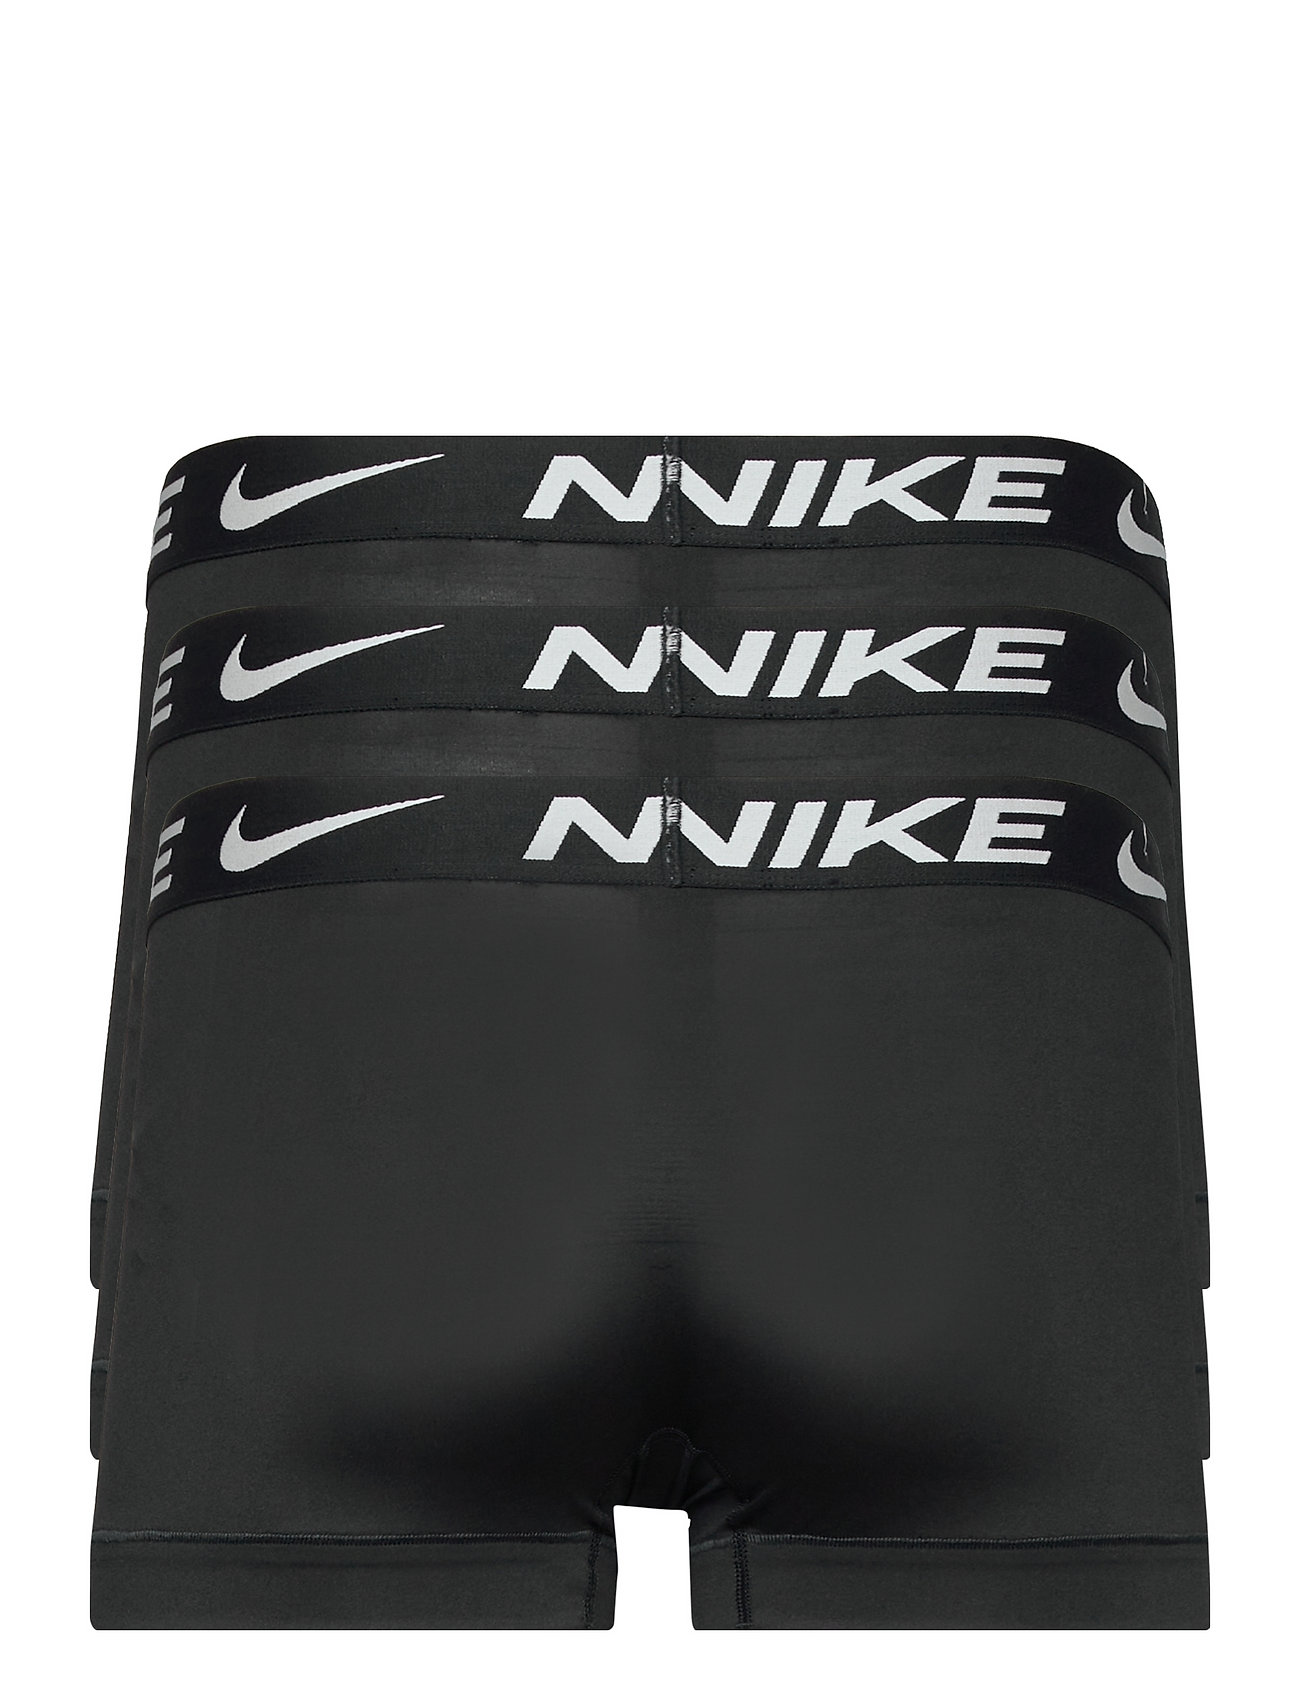 NIKE Underwear - TRUNK 3PK - multipack underbukser - black/black/black - 1